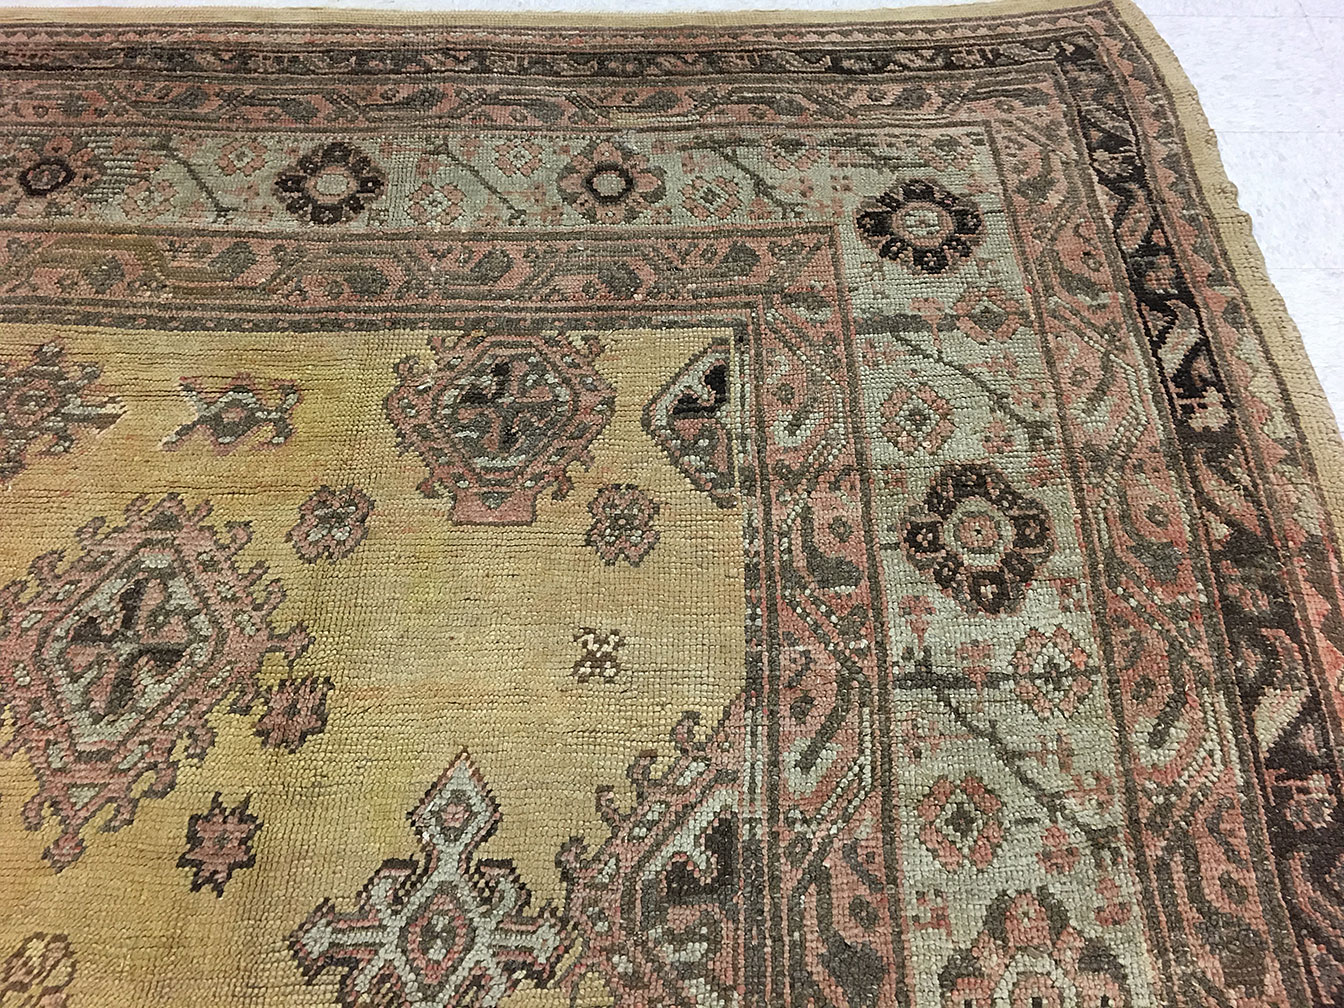 Antique oushak Carpet - # 53159